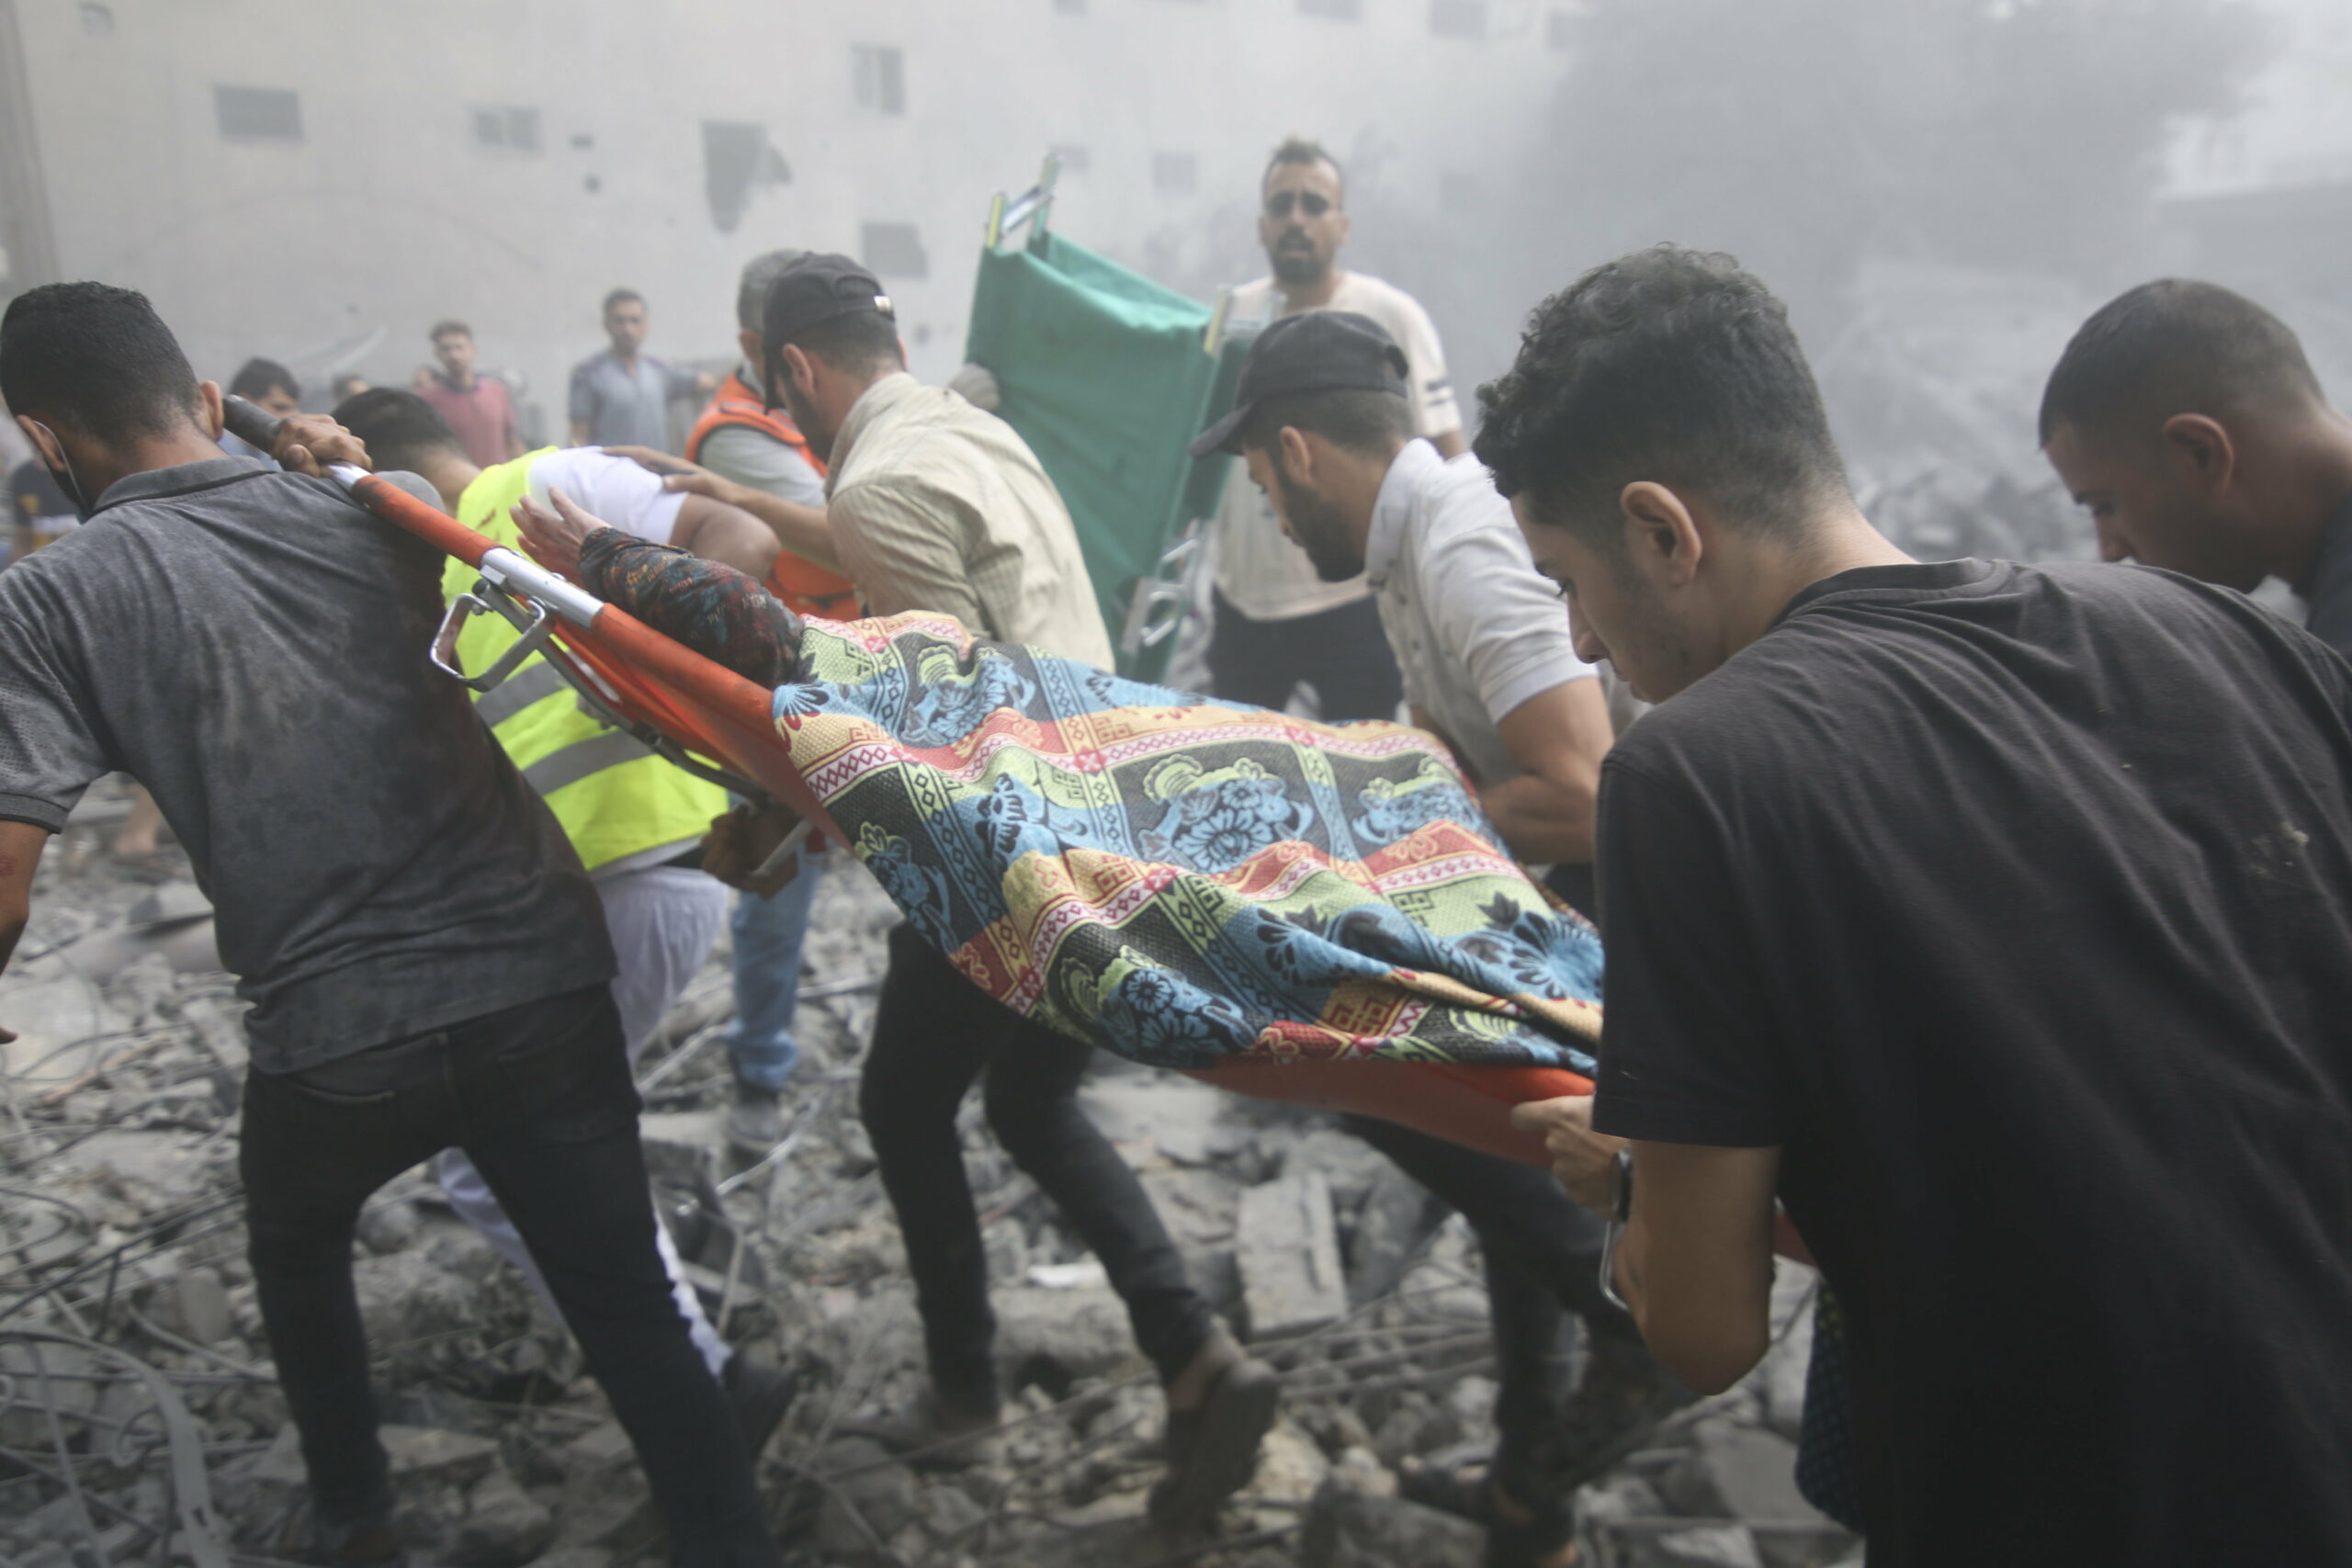 Nekiment a WHO Izraelnek – szerintük „halálos ítélet” lenne a Gázai övezet kiürítése a kórházban lévőknek